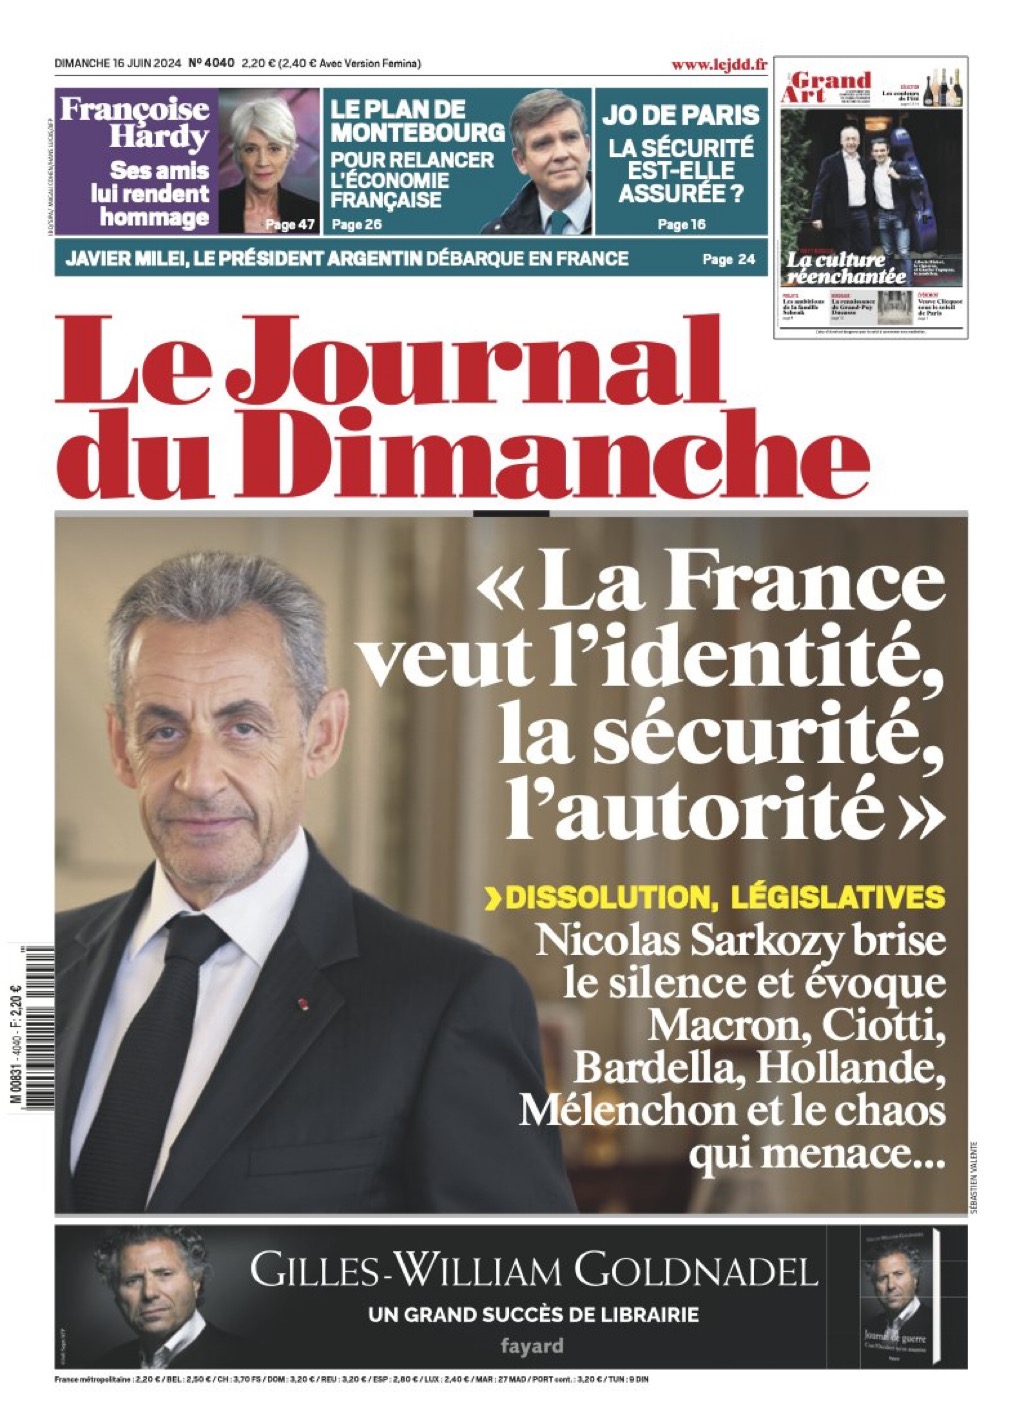 Sarkozy dénonce les tartuffes du risque fantasmé de «peste brune »